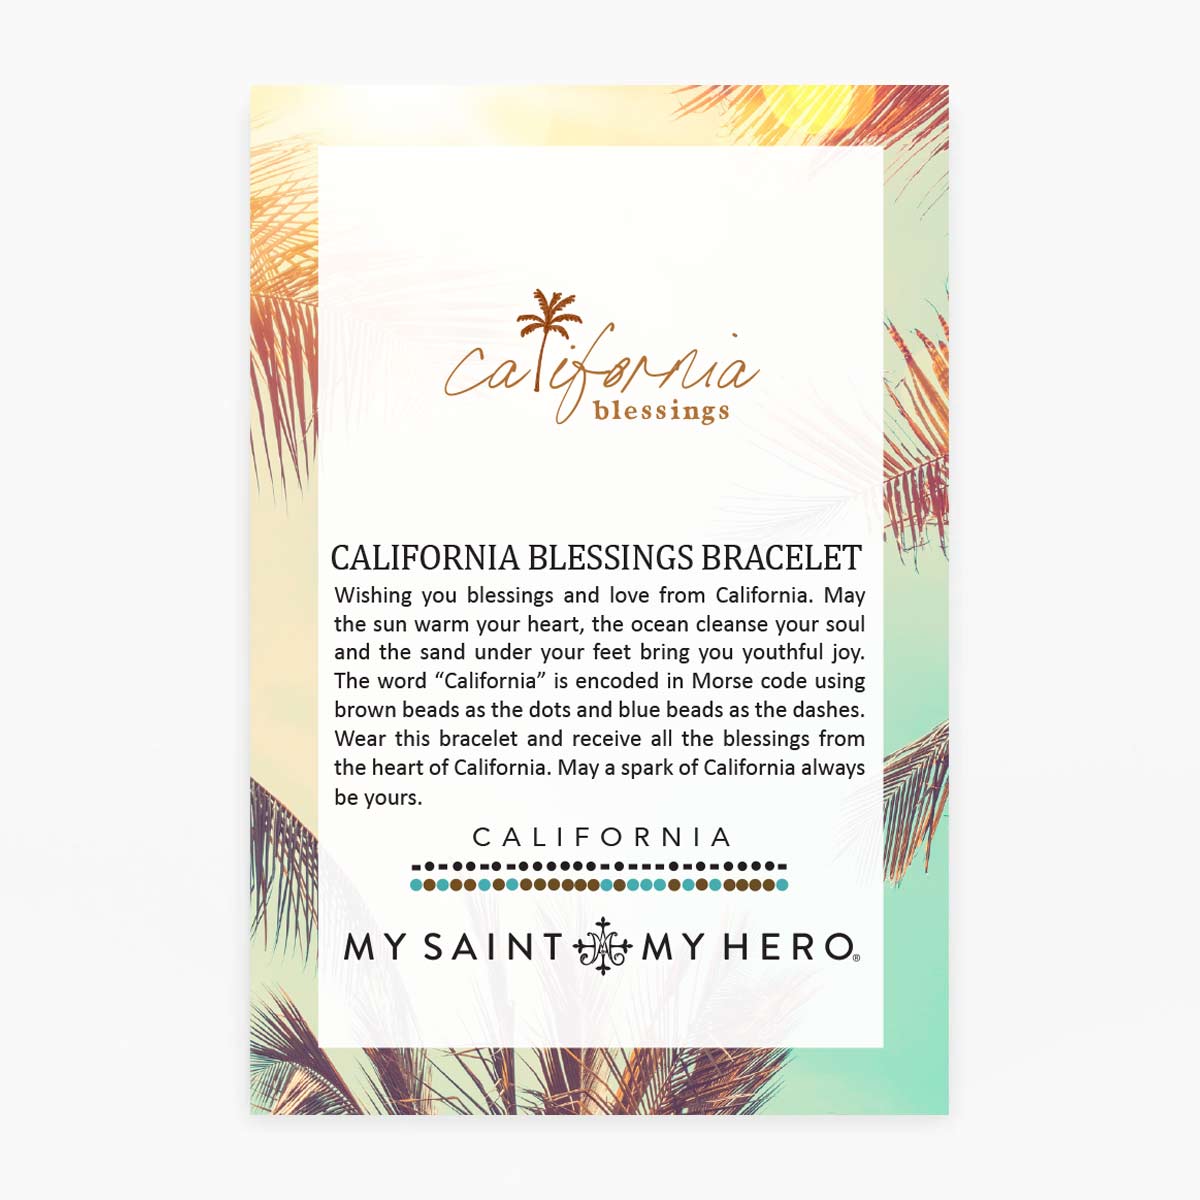 California Blessings Bracelet